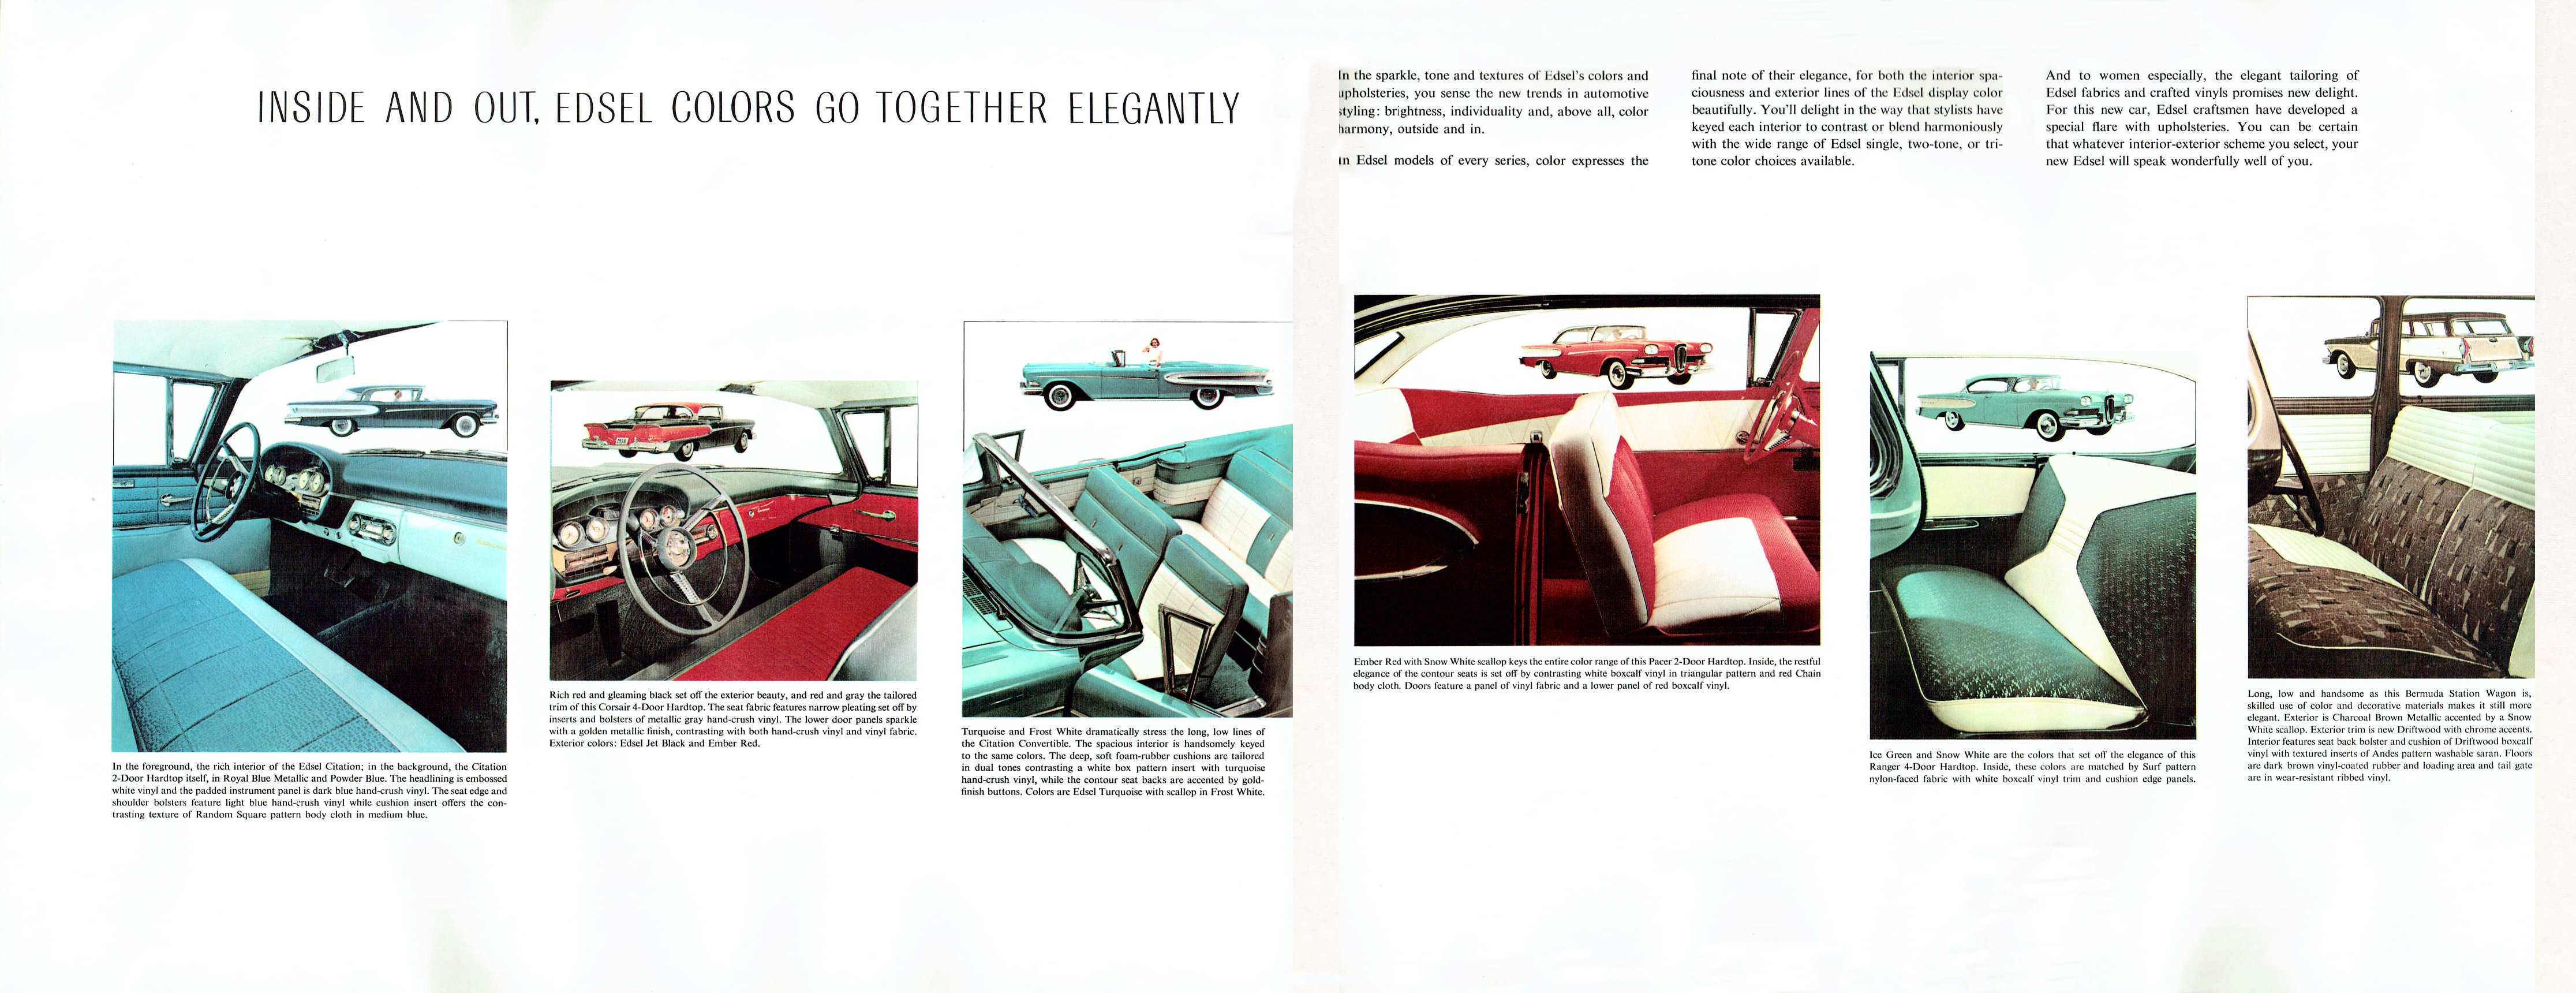 1958_Edsel_Full_Line_Prestige-26-27